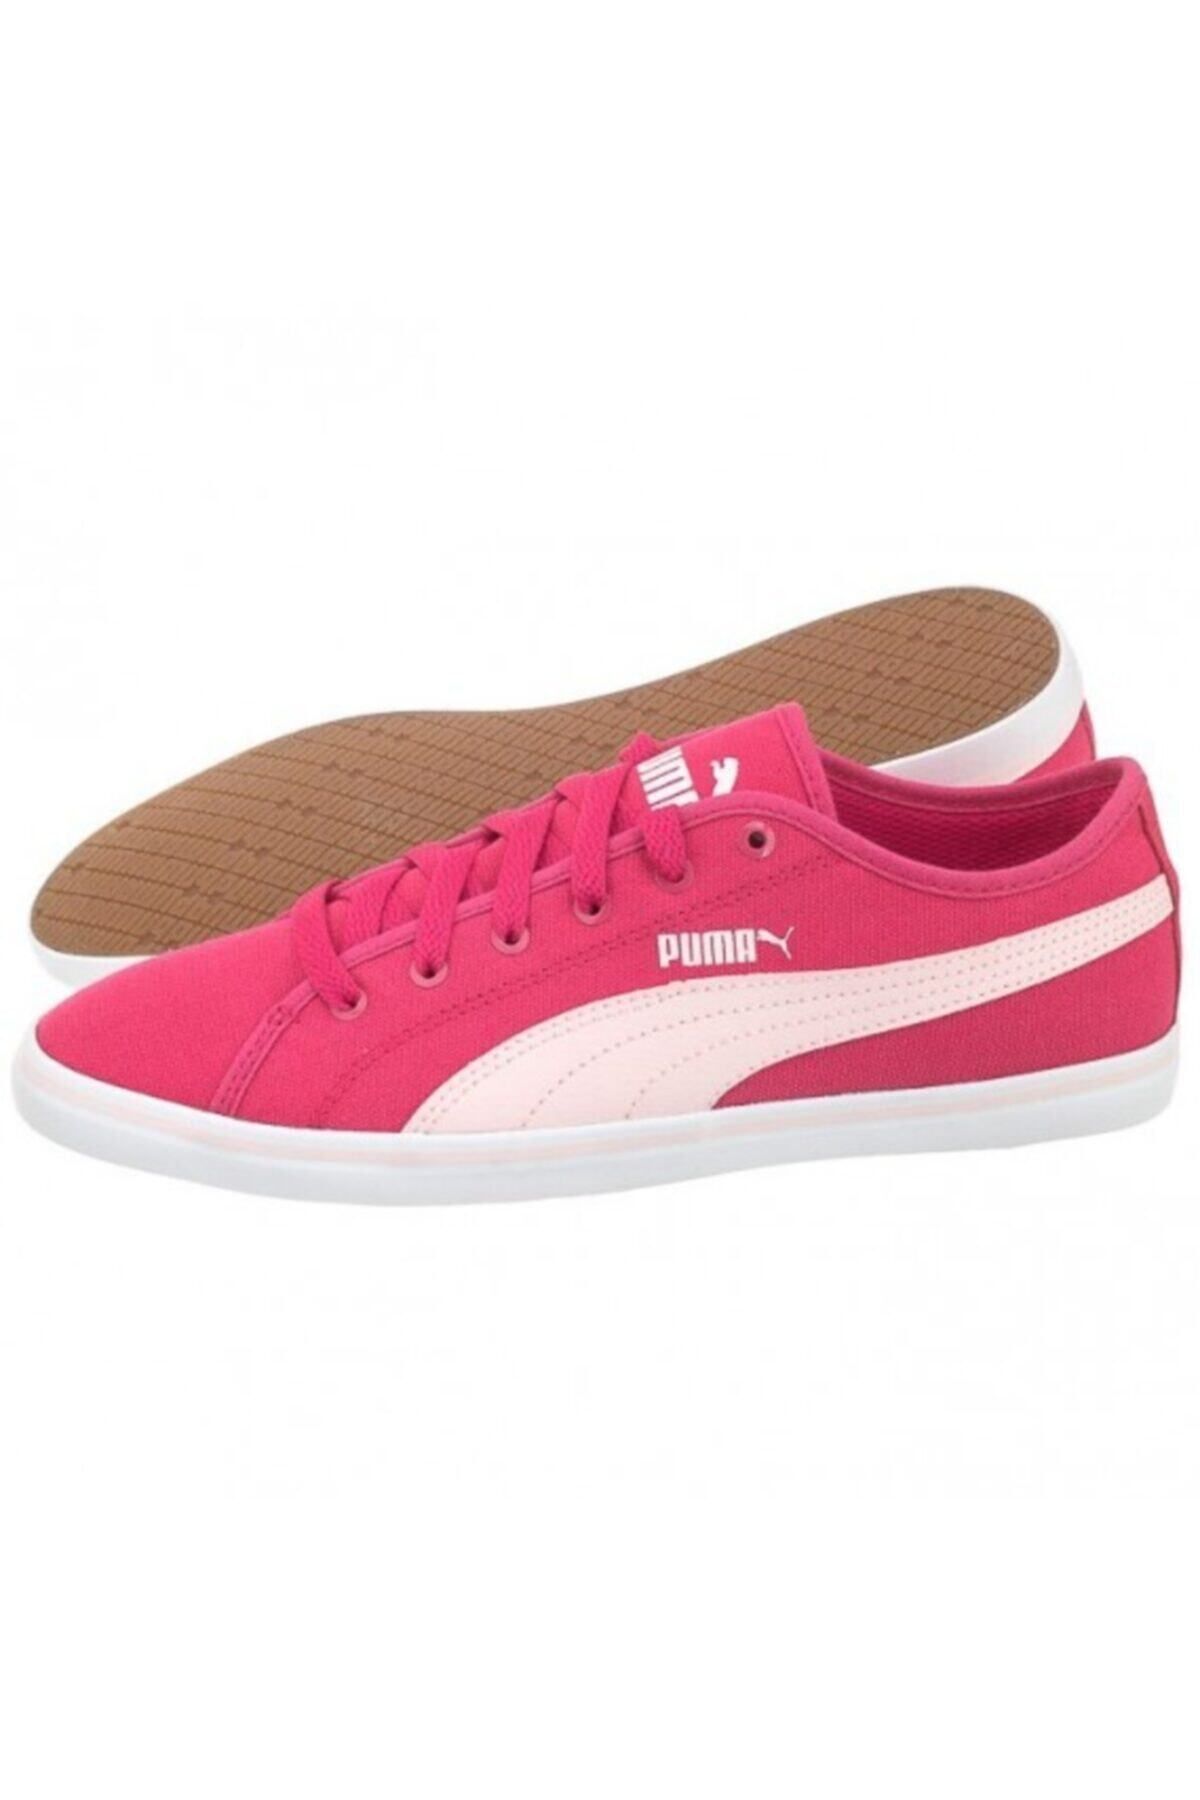 Puma Kadın Spor Ayakkabı Cv Rose Red-pink Dogwood 359849 03 Elsu V2